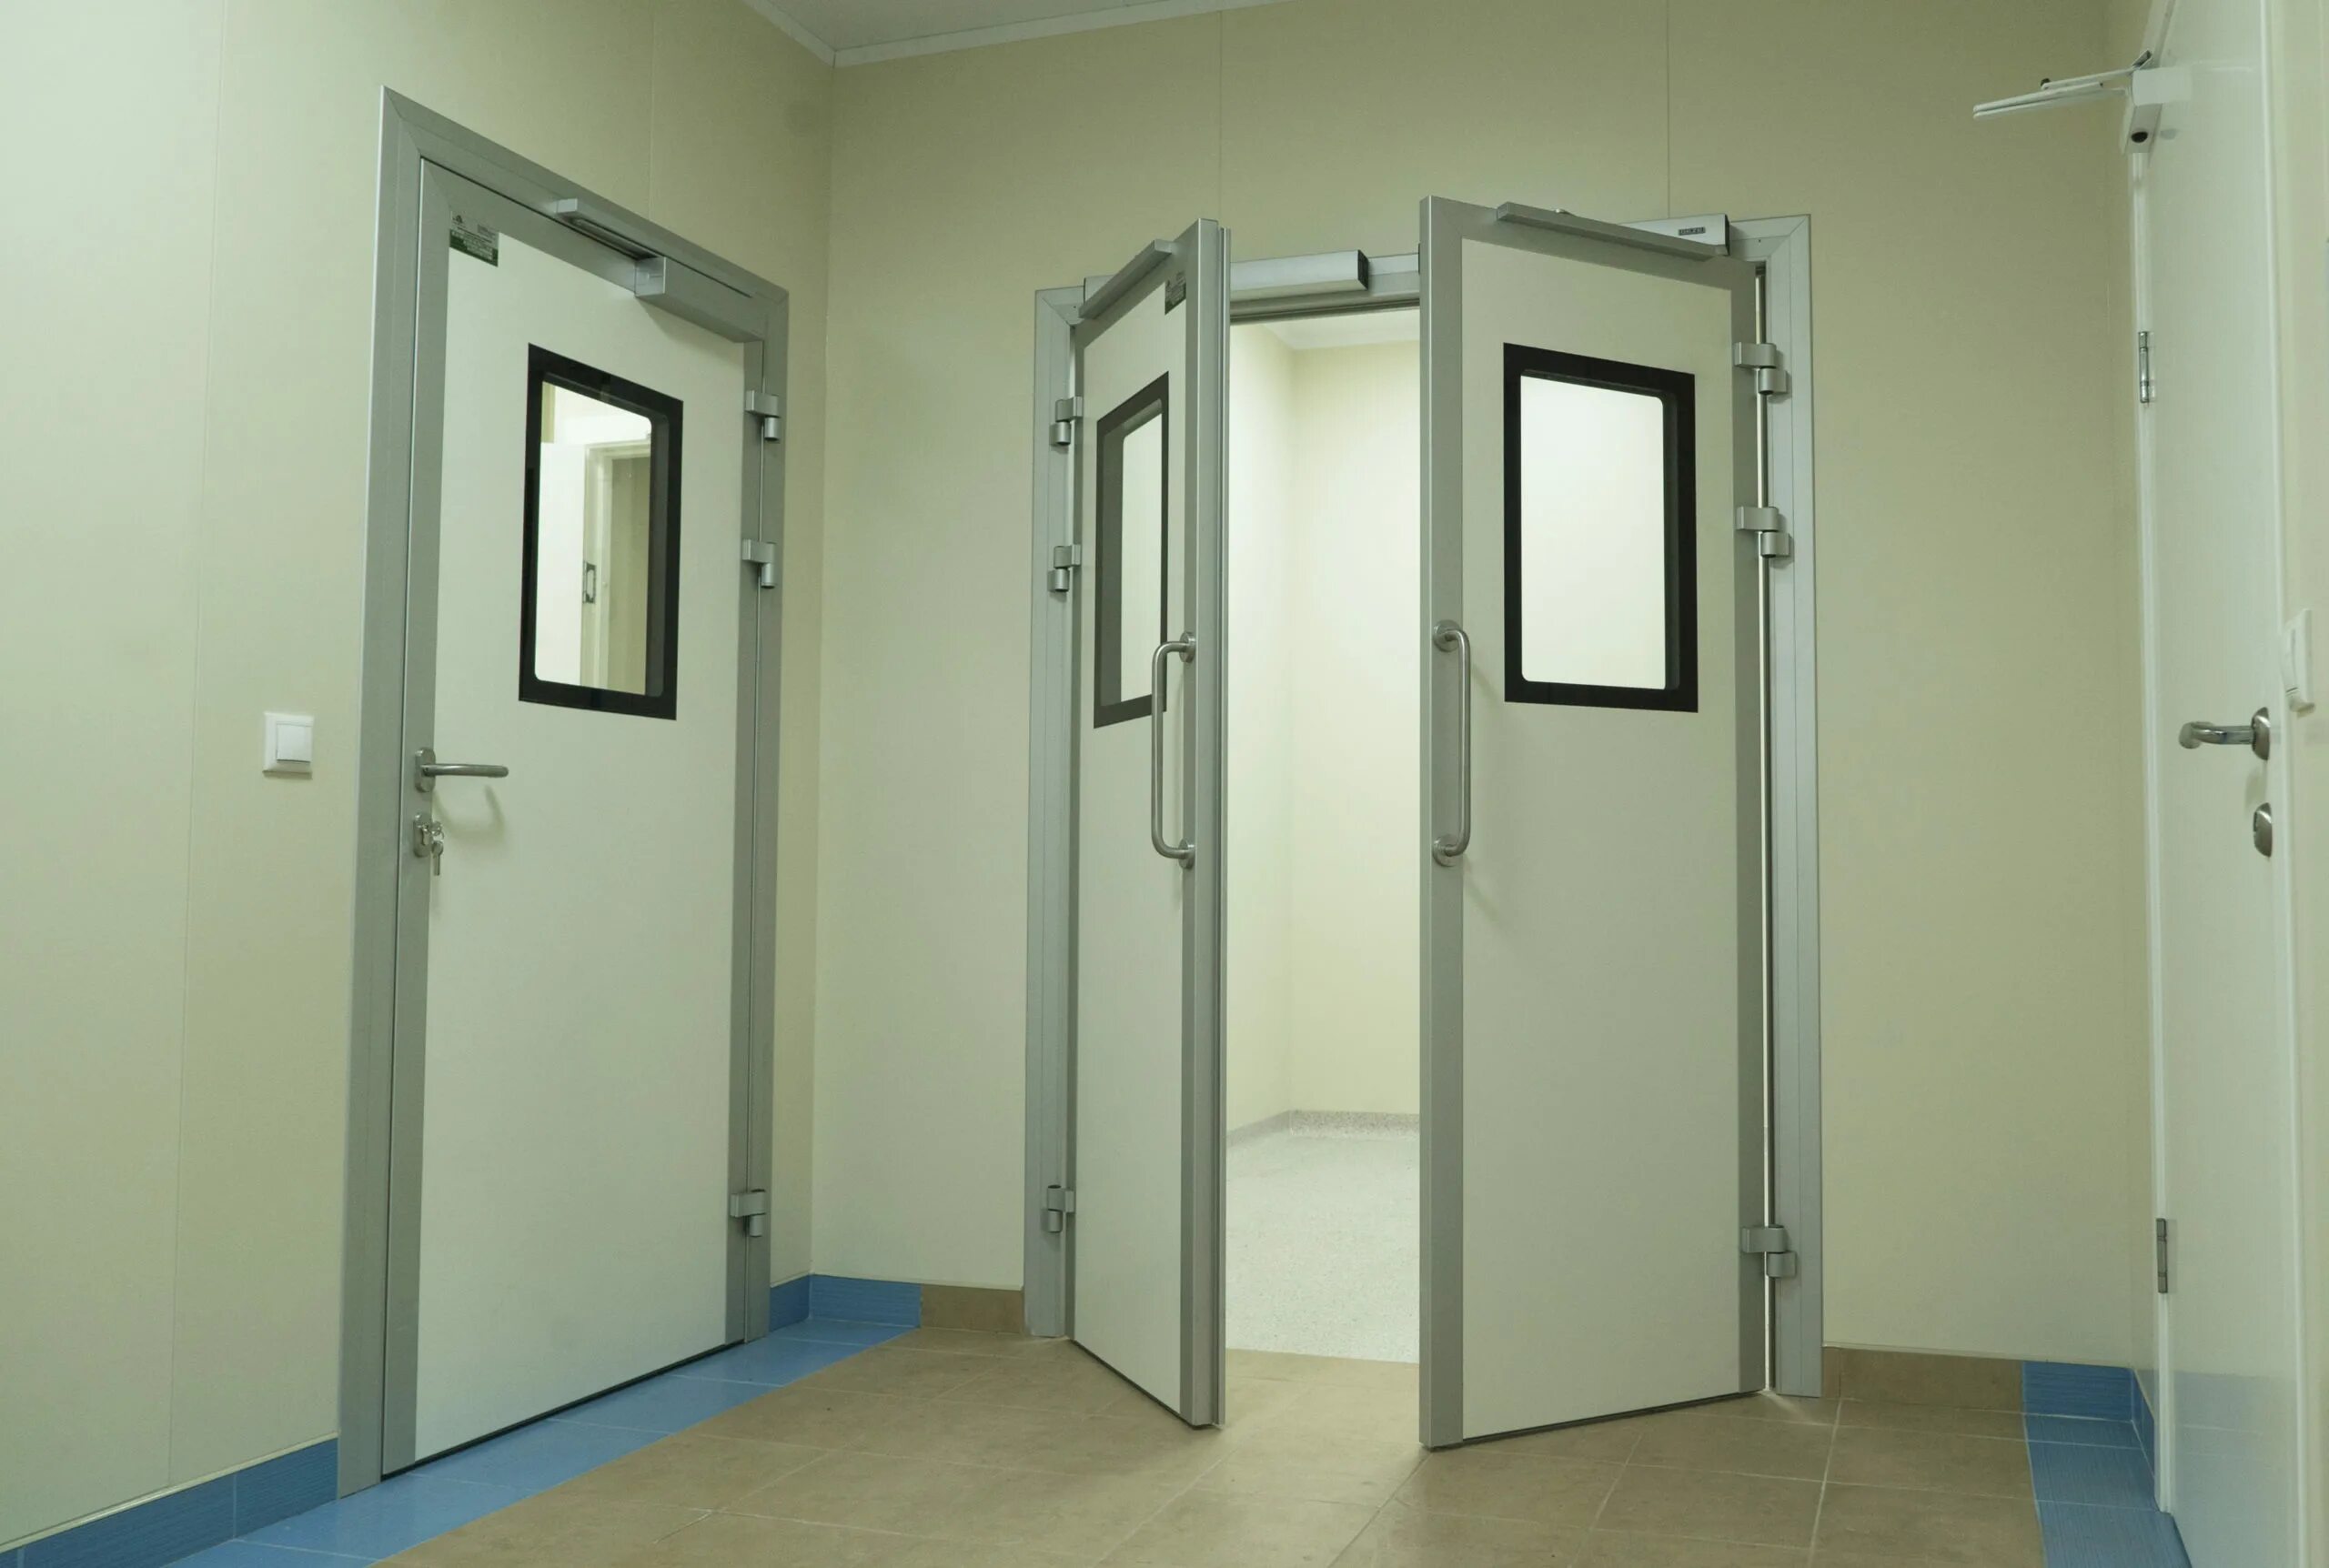 Двери медицинские екатеринбург. Слайдерные двери для чистых помещений. Медицинские двери rw42db. Двери для чистых помещений Флакт Гроуп. Автоматические двери для чистых помещений.